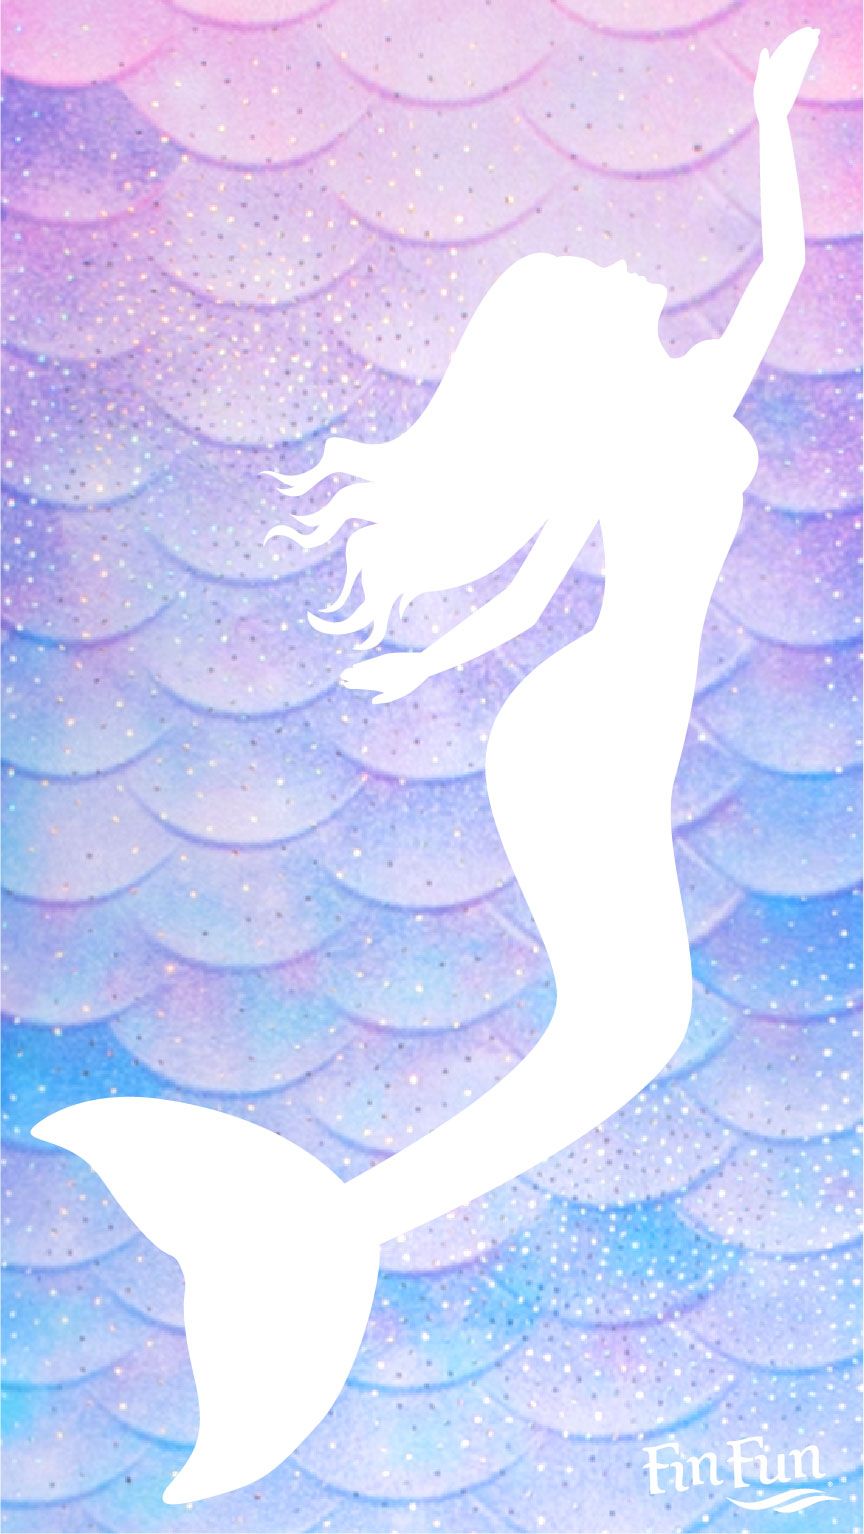 Cute MermaidWallpapers